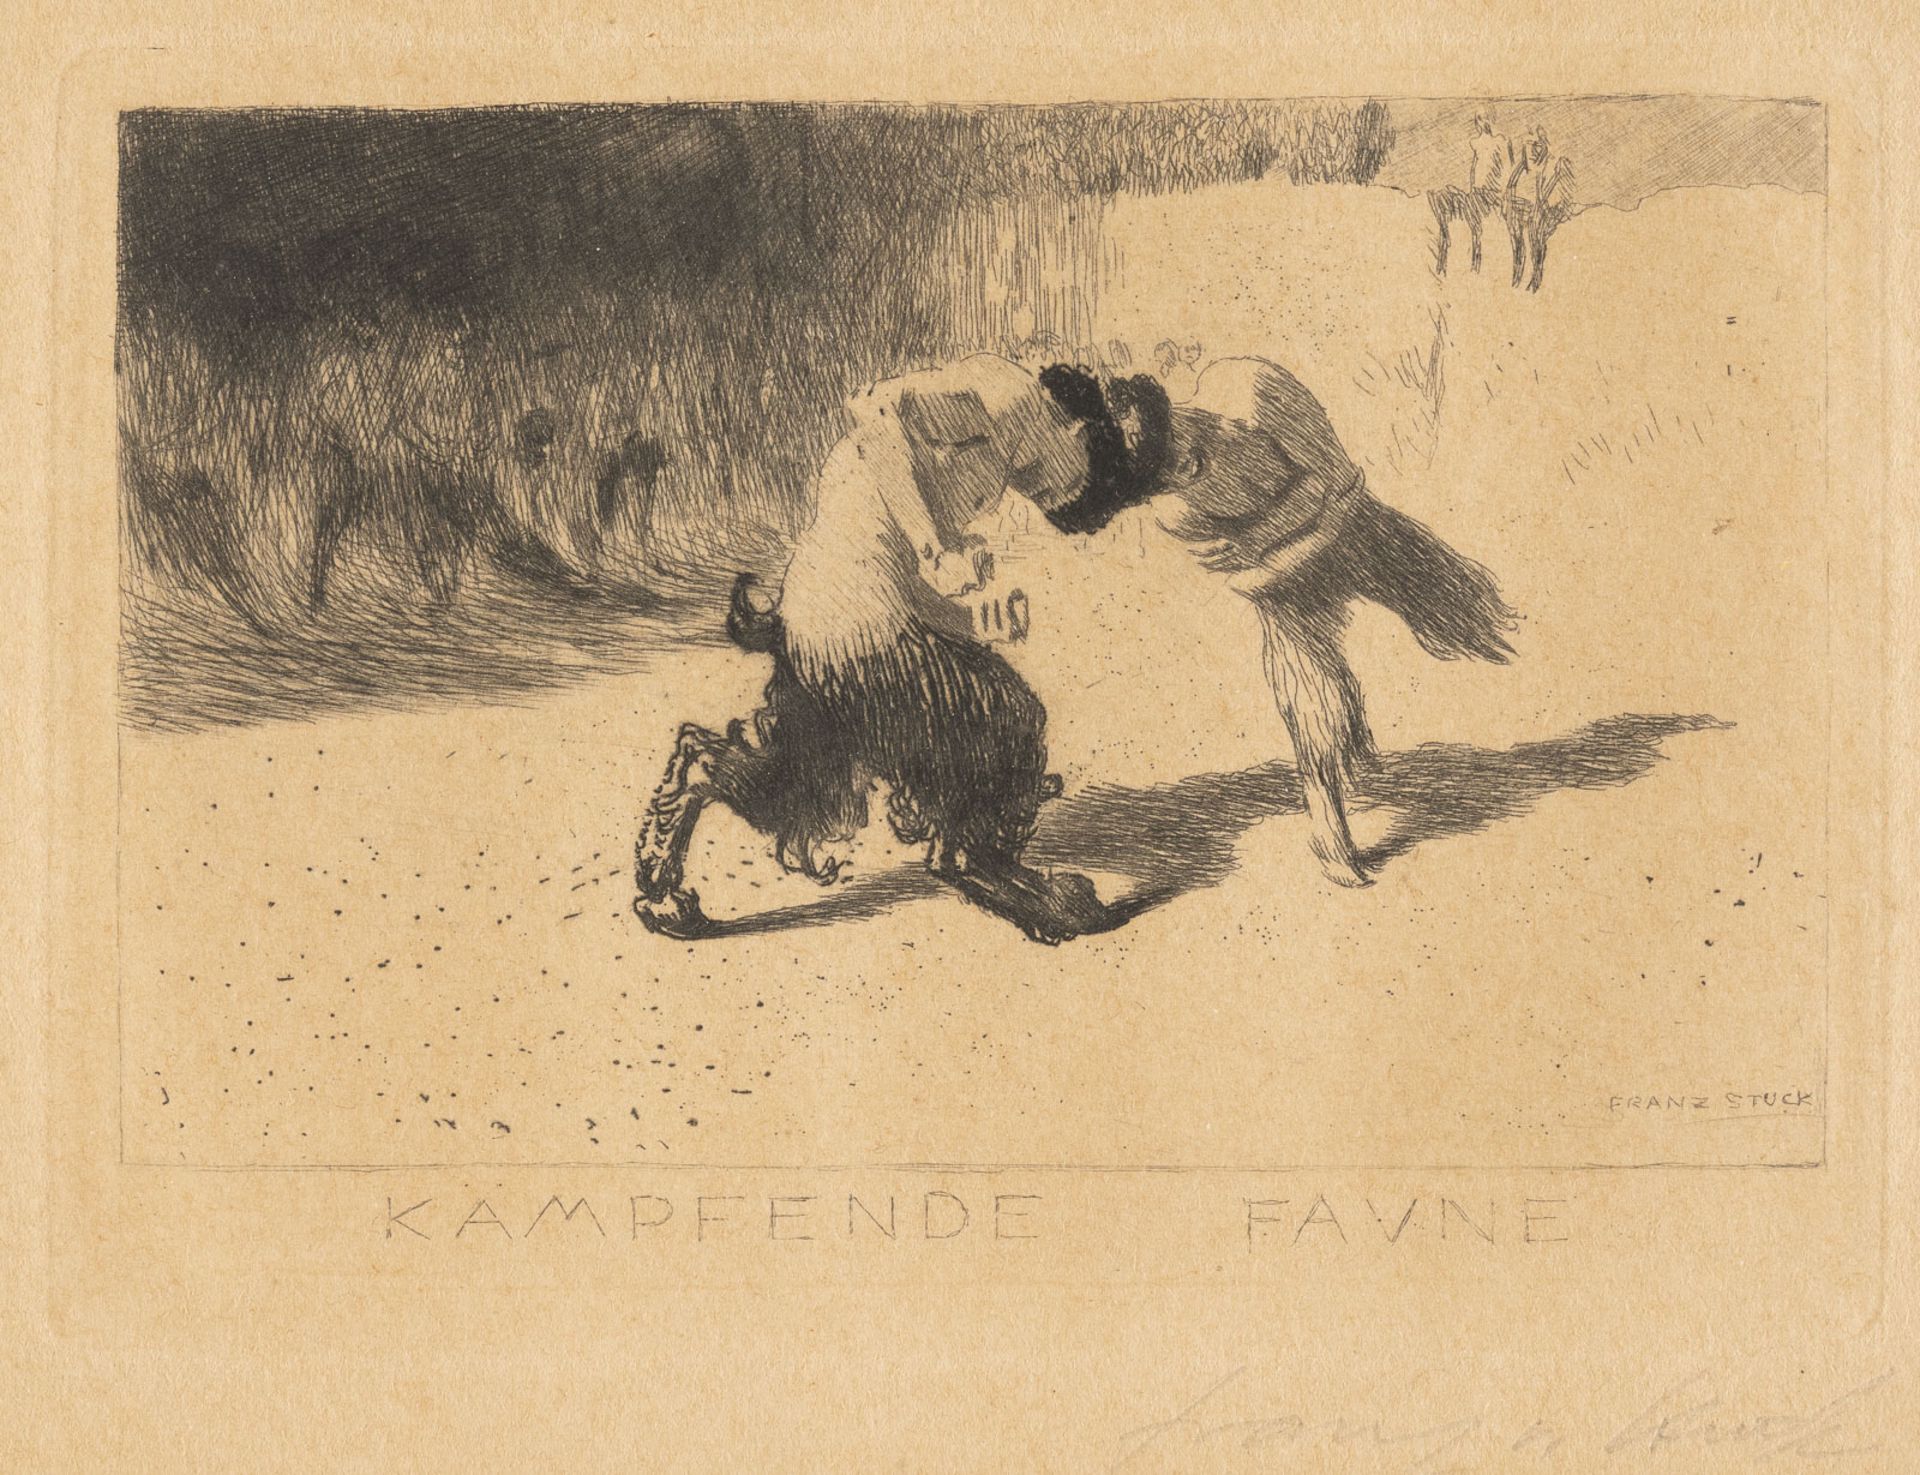 'KÄMPFENDE FAUNE' (1889)